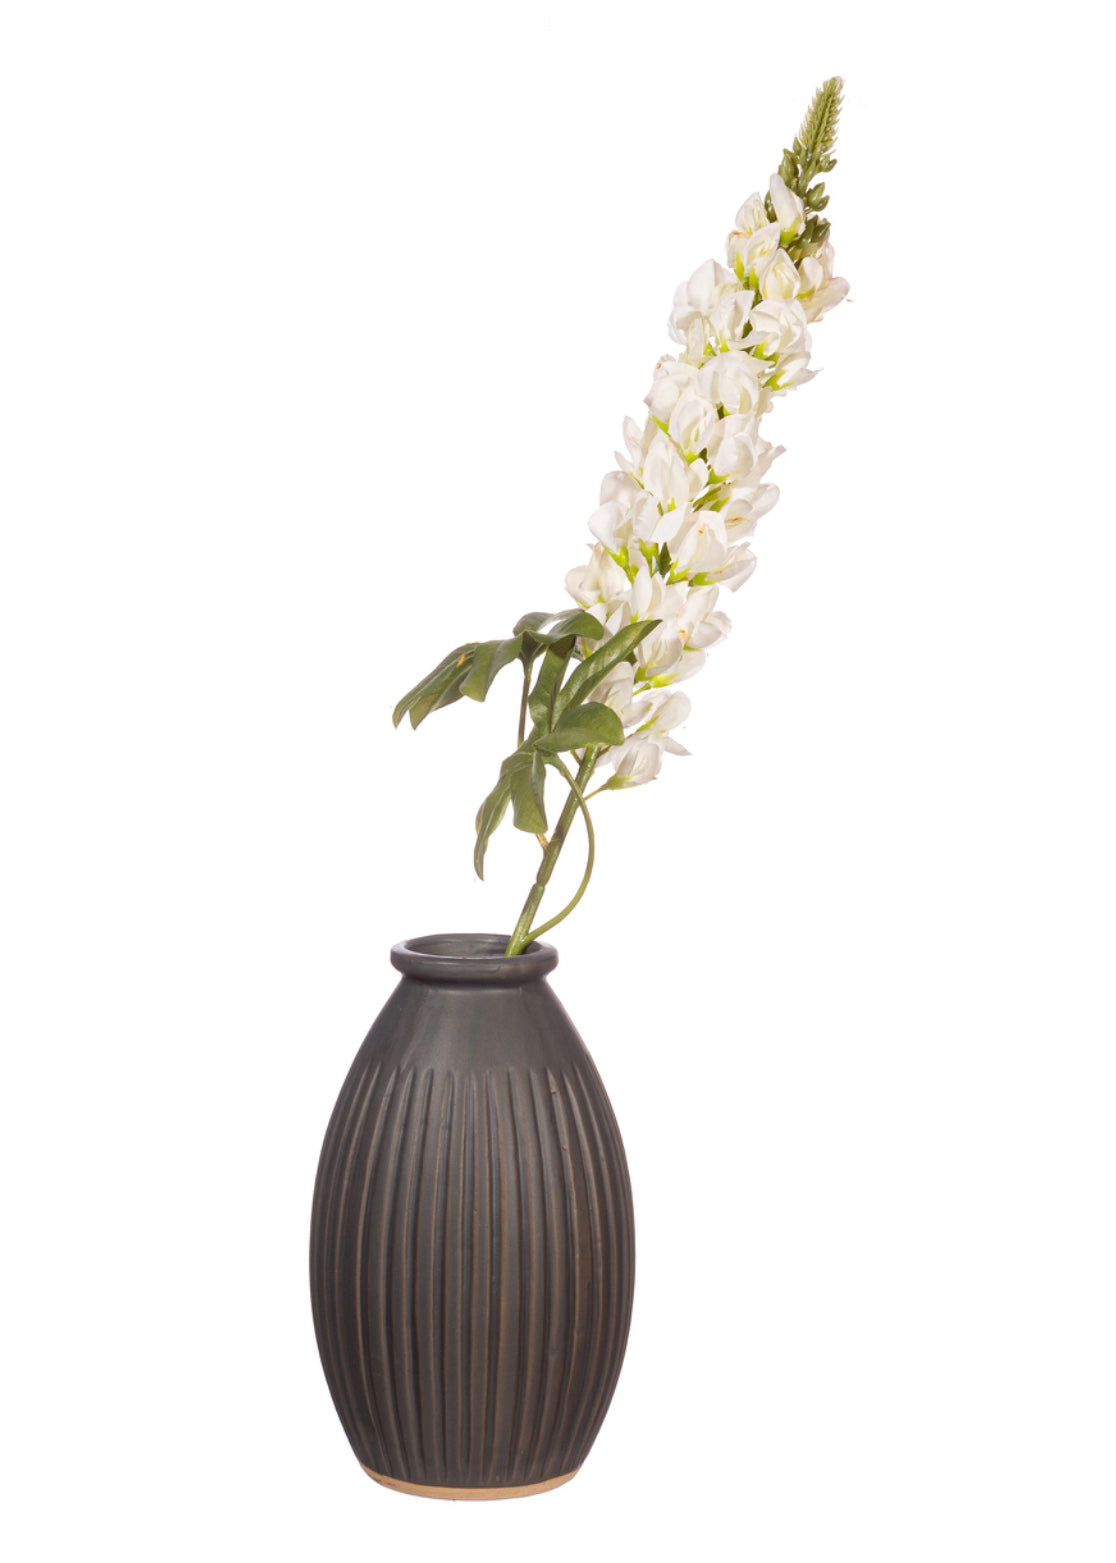 Sass & Belle - Grooved Vase Large in Black